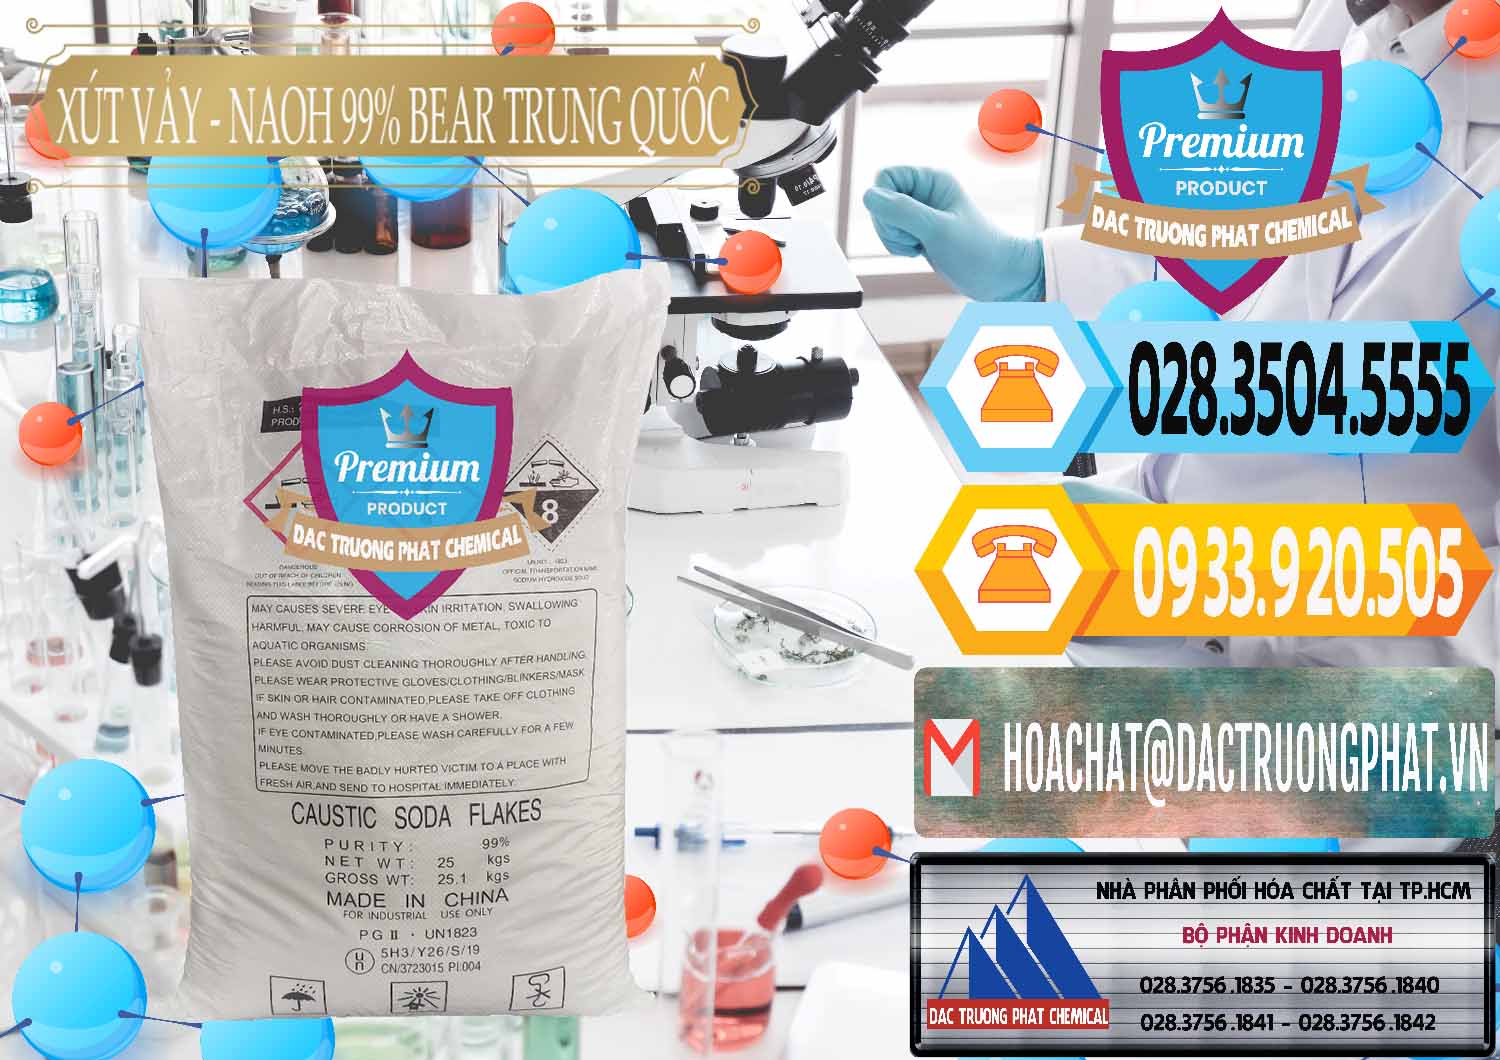 Nơi chuyên phân phối - bán Xút Vảy - NaOH Vảy 99% Bear Sơn Đông Trung Quốc China - 0175 - Nơi phân phối và nhập khẩu hóa chất tại TP.HCM - hoachattayrua.net